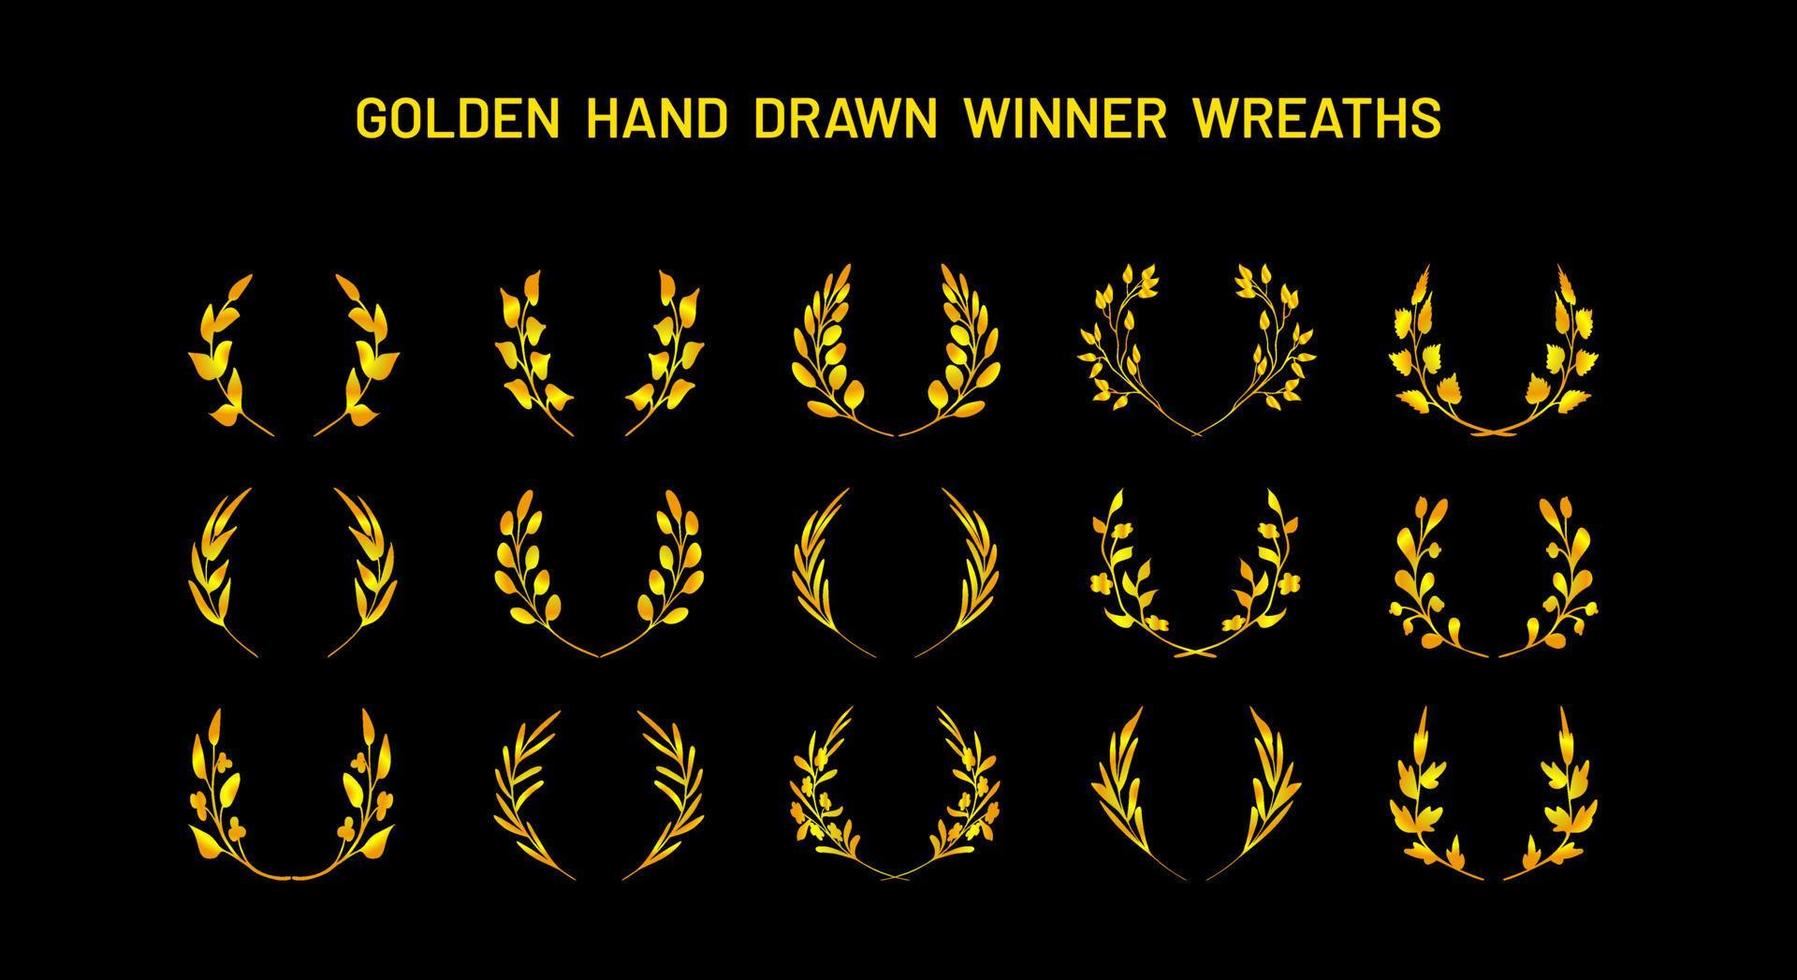 bocetos simples dibujados a mano de coronas de victoria doradas de fantasía, coronas de laurel. colección de elementos de diseño vector